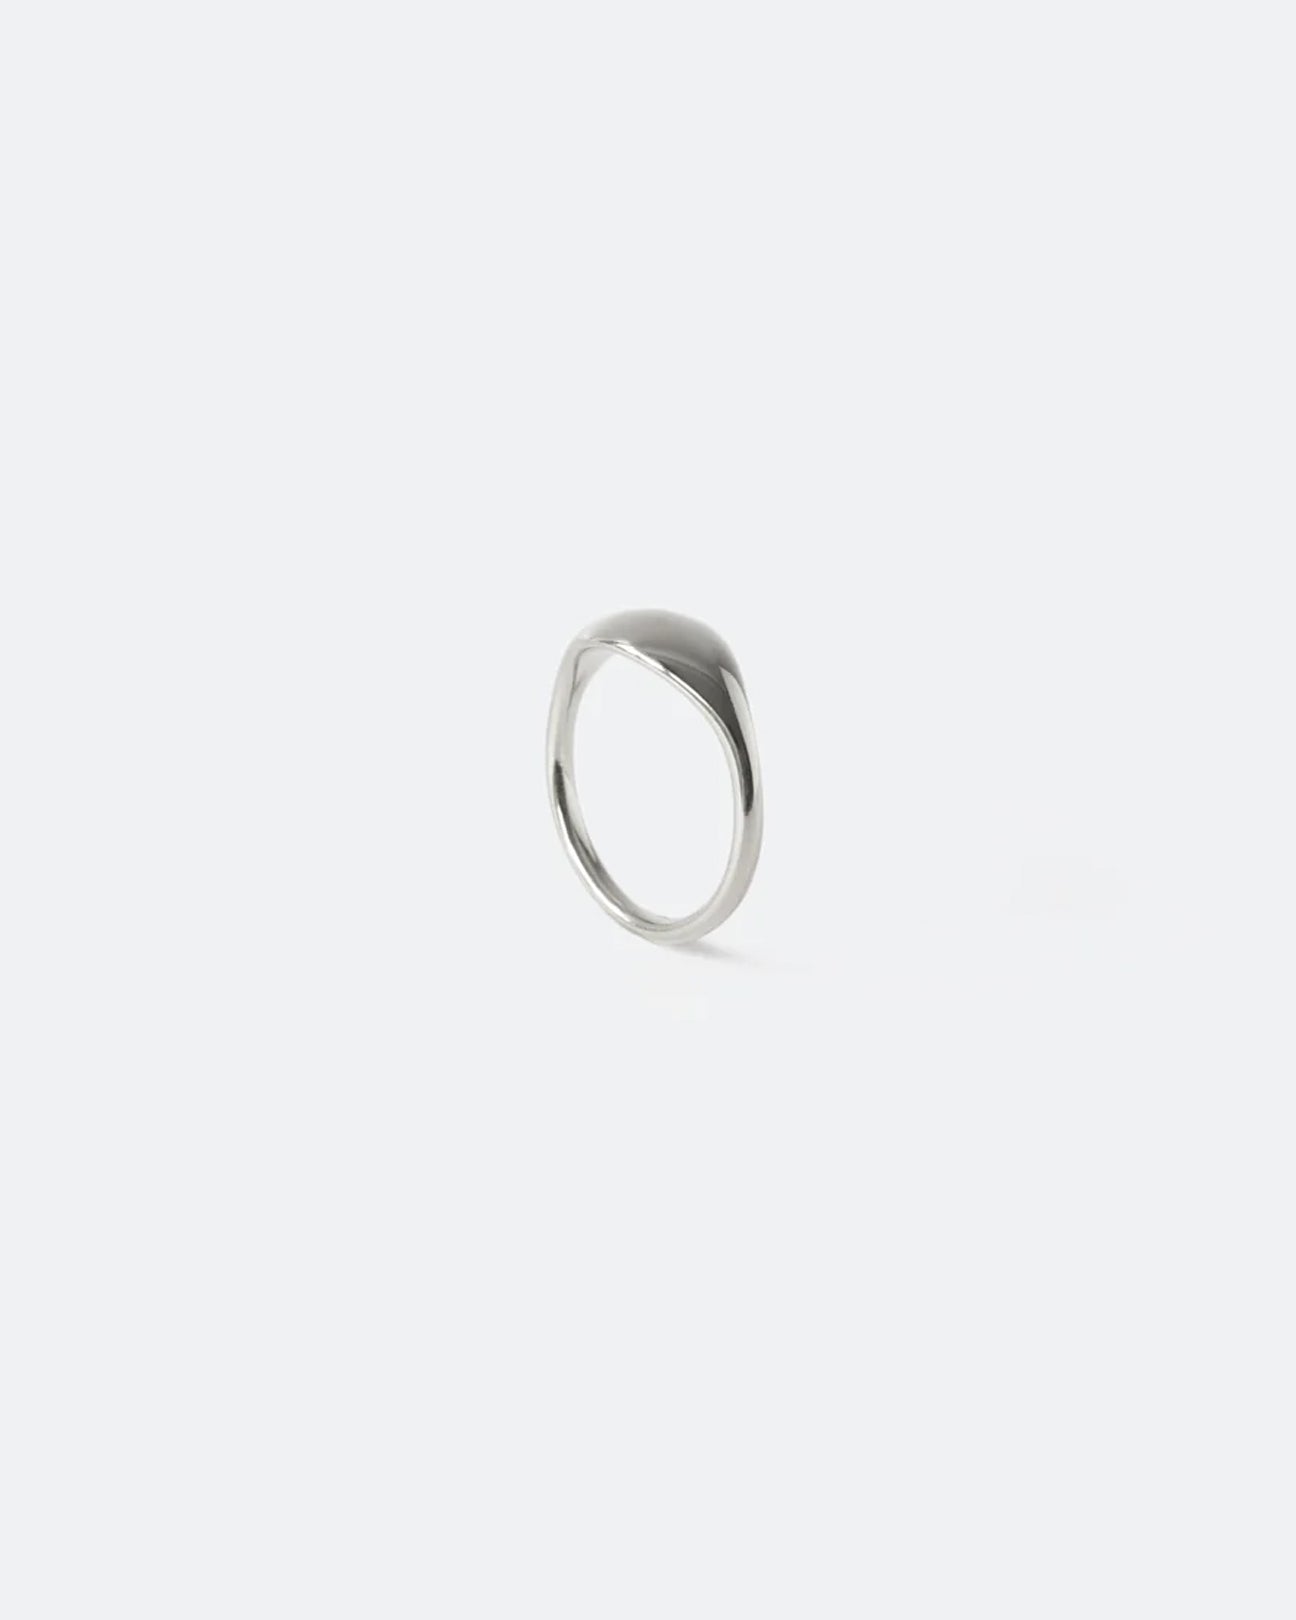 IDAMARI Drop Ring in Silver available at Lahn.shop